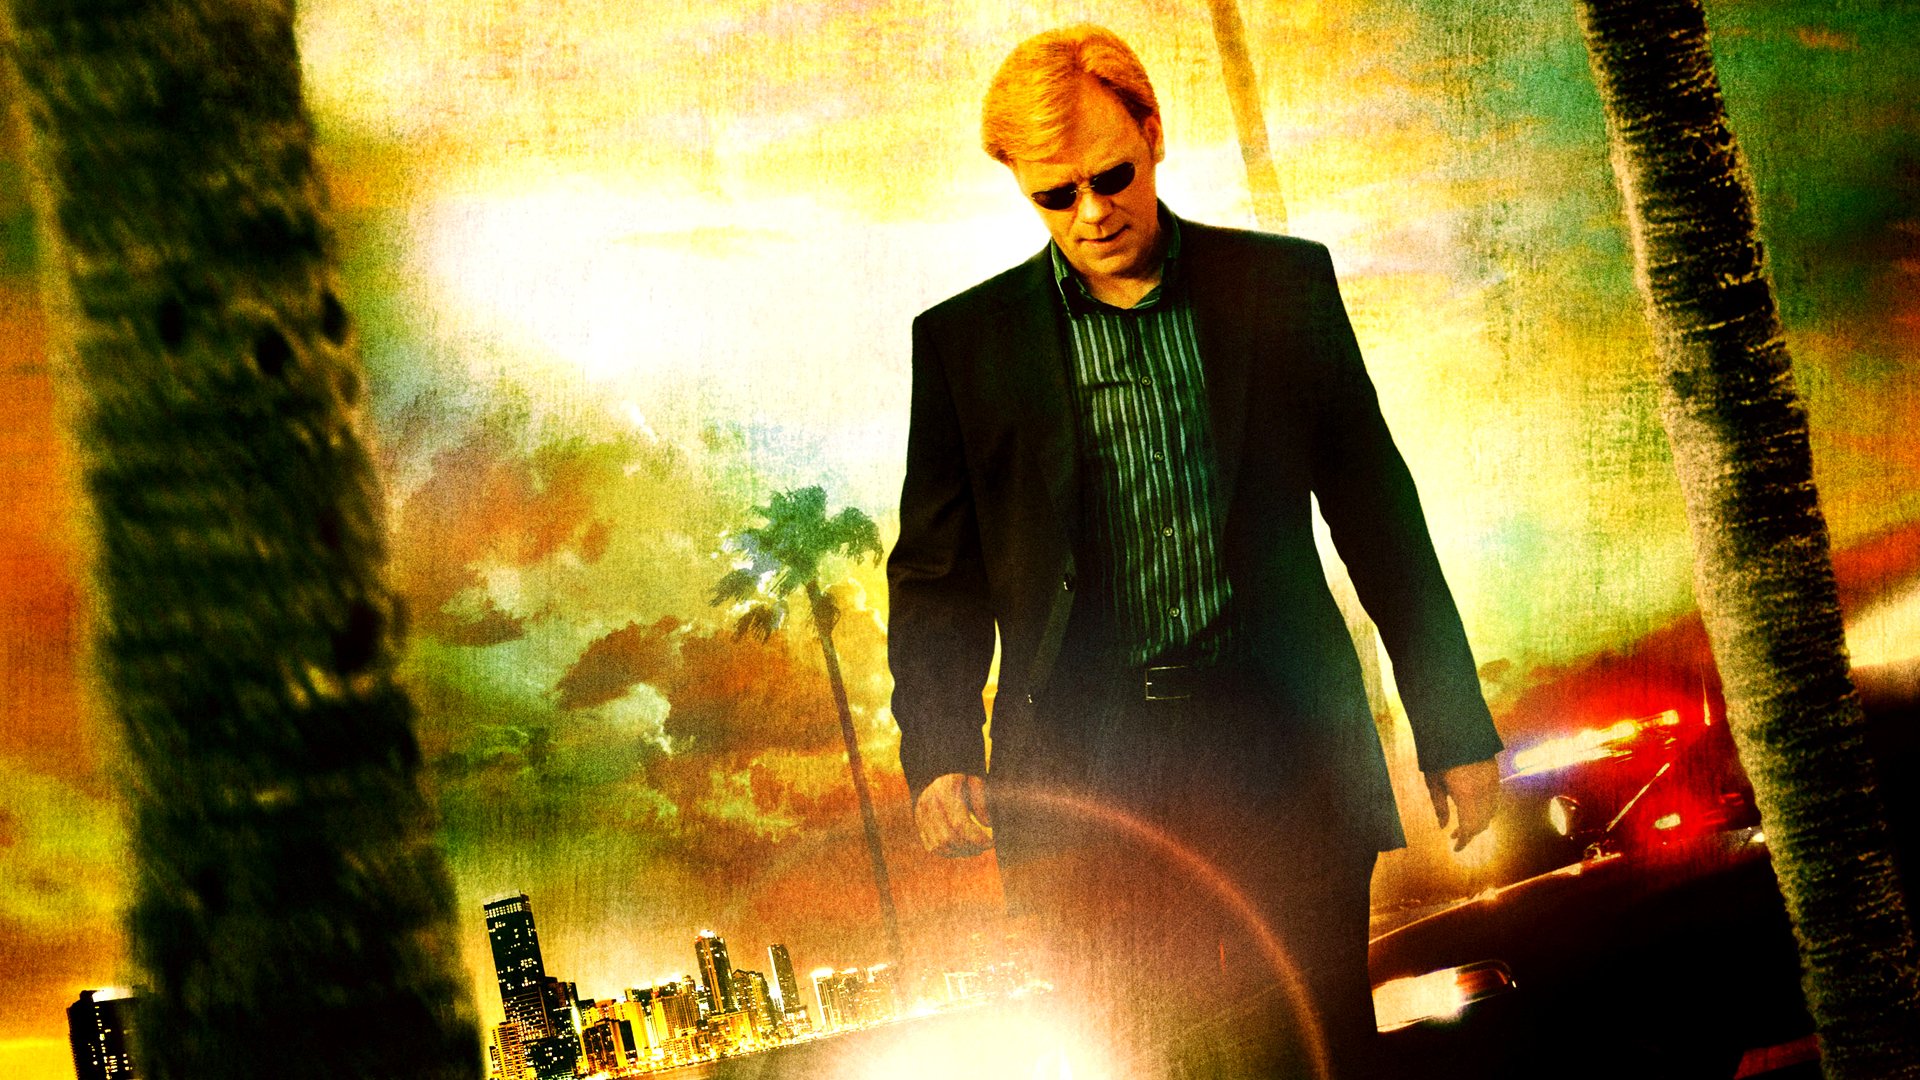 CSI: Miami HD Wallpaper and Background Image